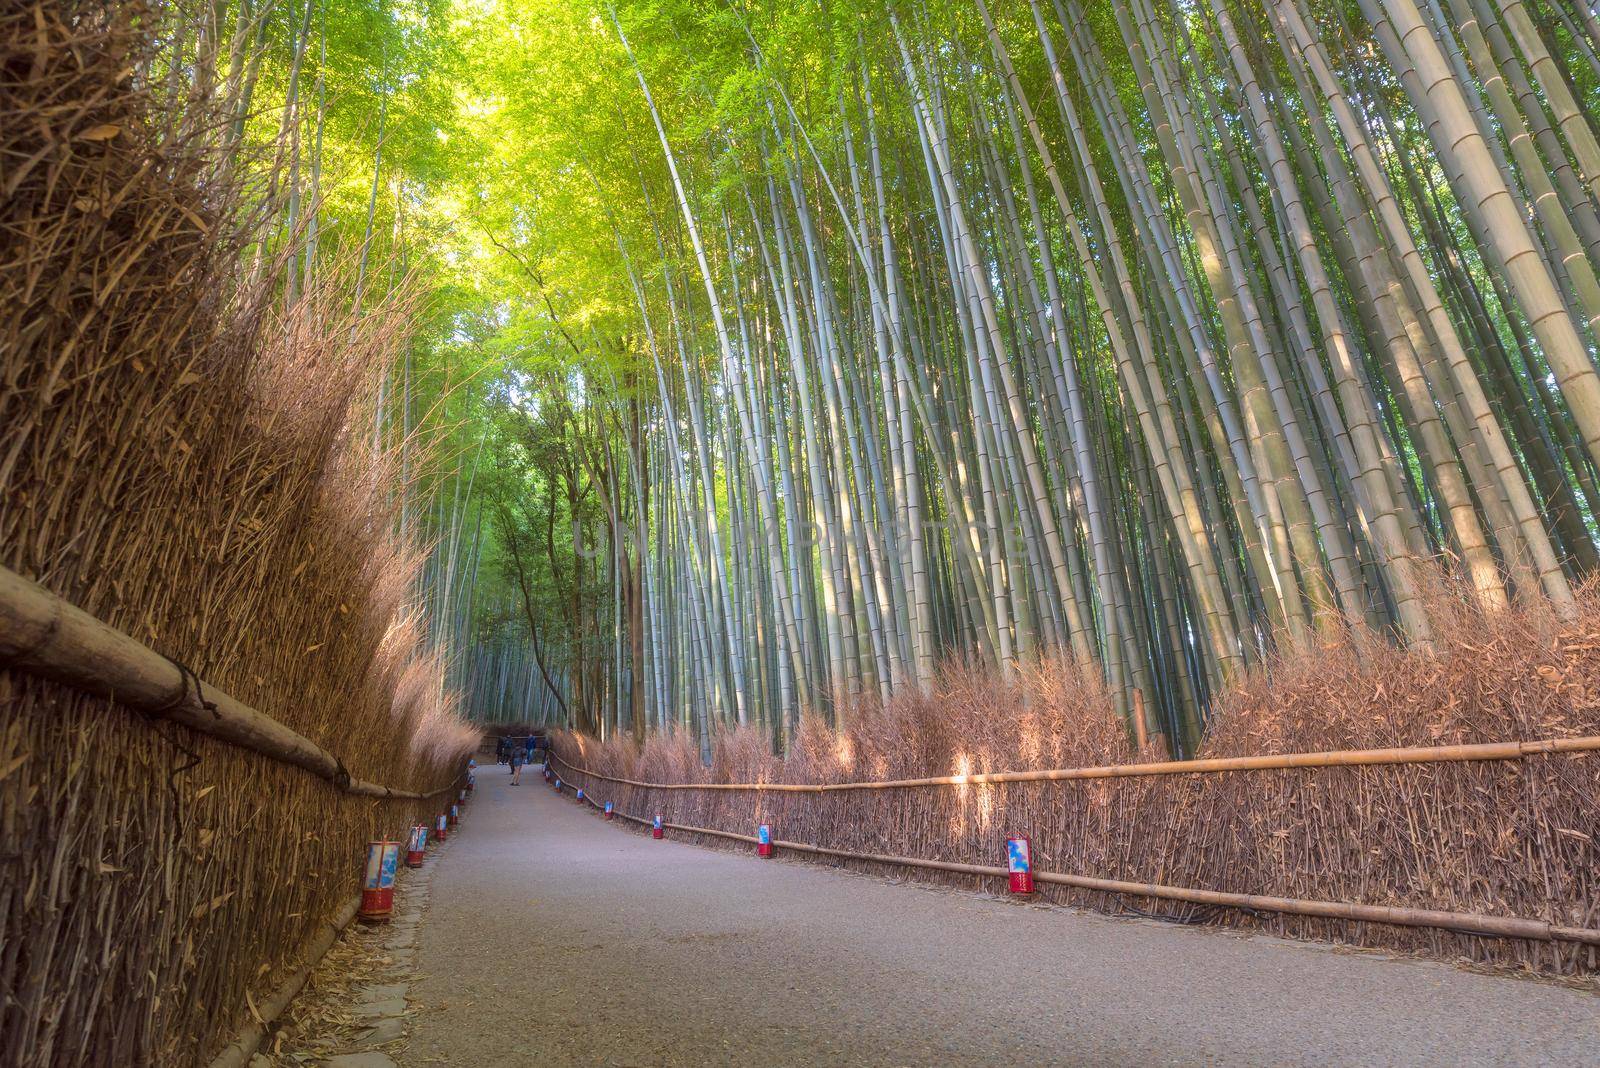 Beautiful nature bamboo forest in autumn season at Arashiyama in Kyoto, Japan.